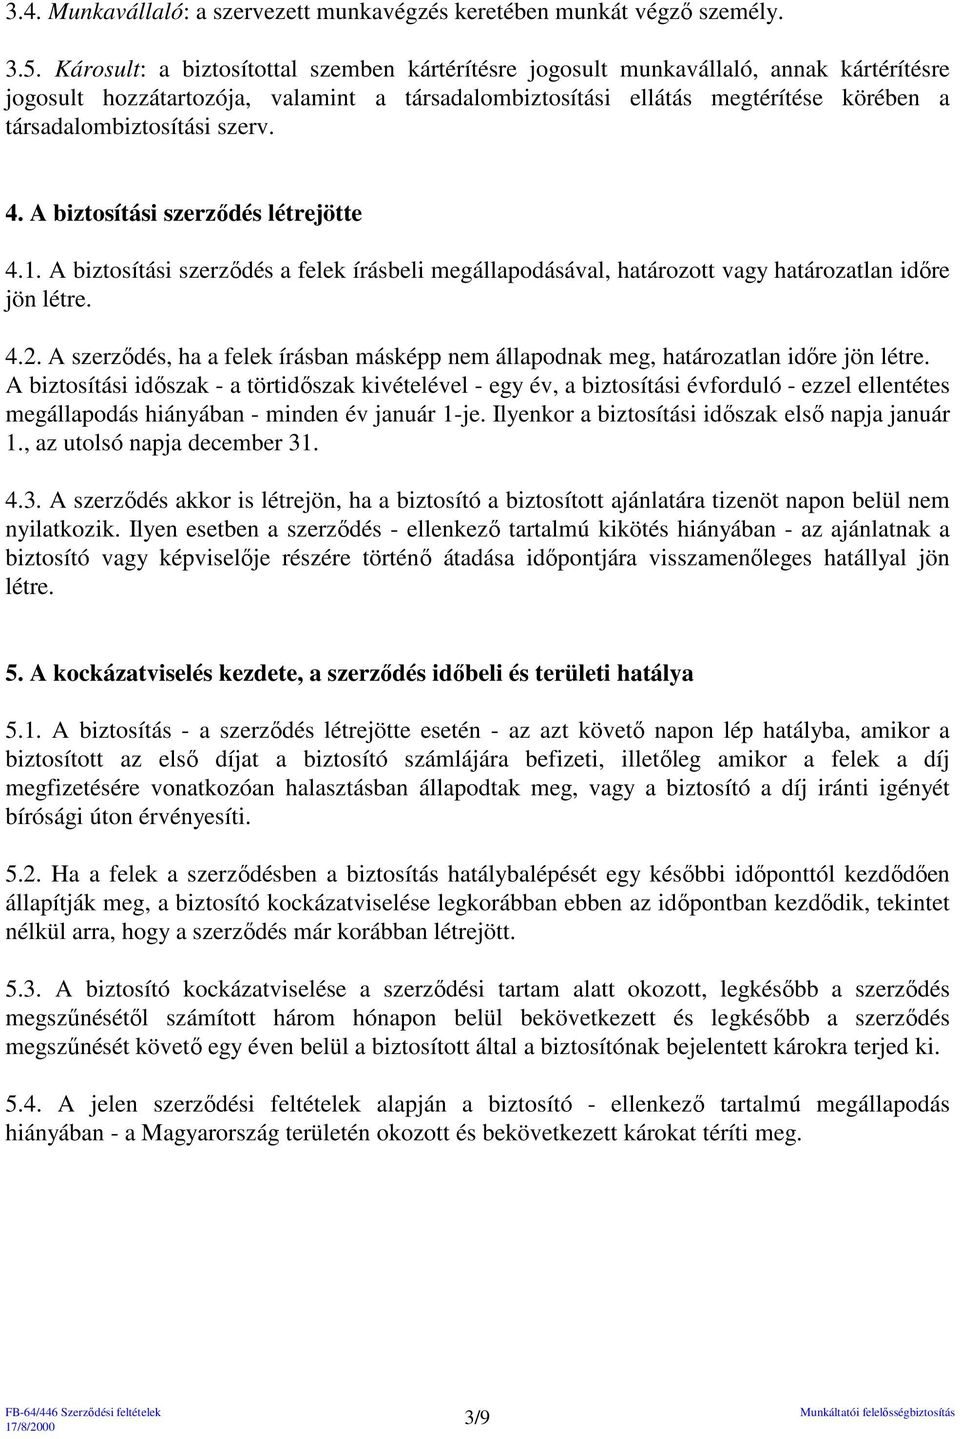 szerv. 4. A biztosítási szerzıdés létrejötte 4.1. A biztosítási szerzıdés a felek írásbeli megállapodásával, határozott vagy határozatlan idıre jön létre. 4.2.